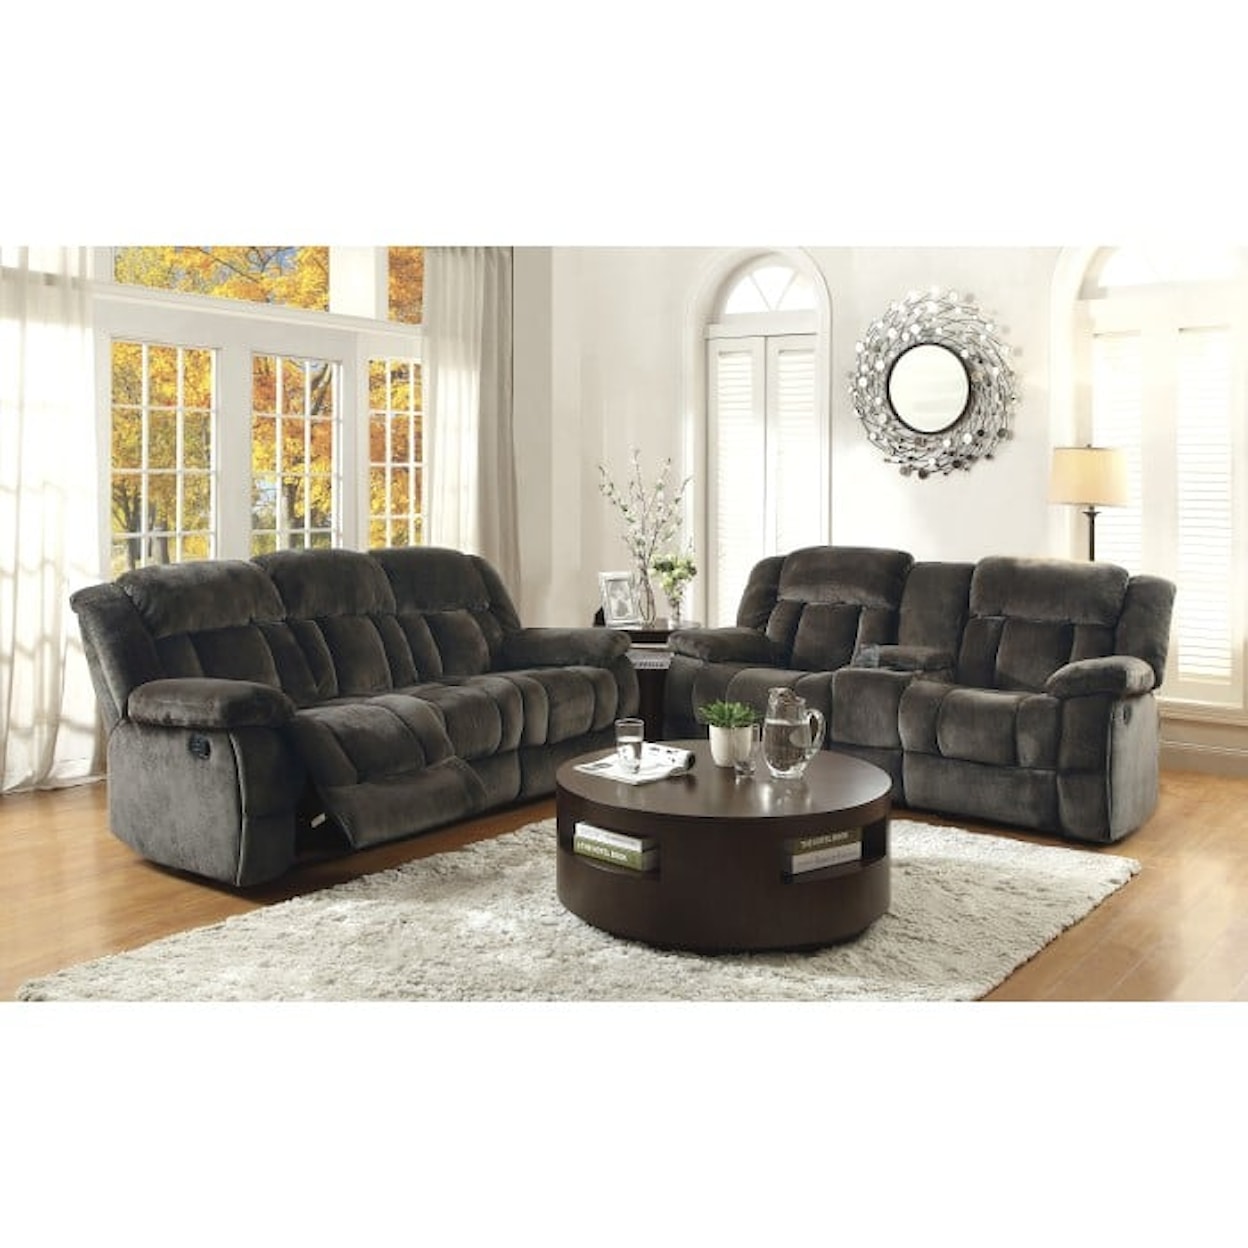 Homelegance Furniture Laurelton 2-Piece Living Room Set